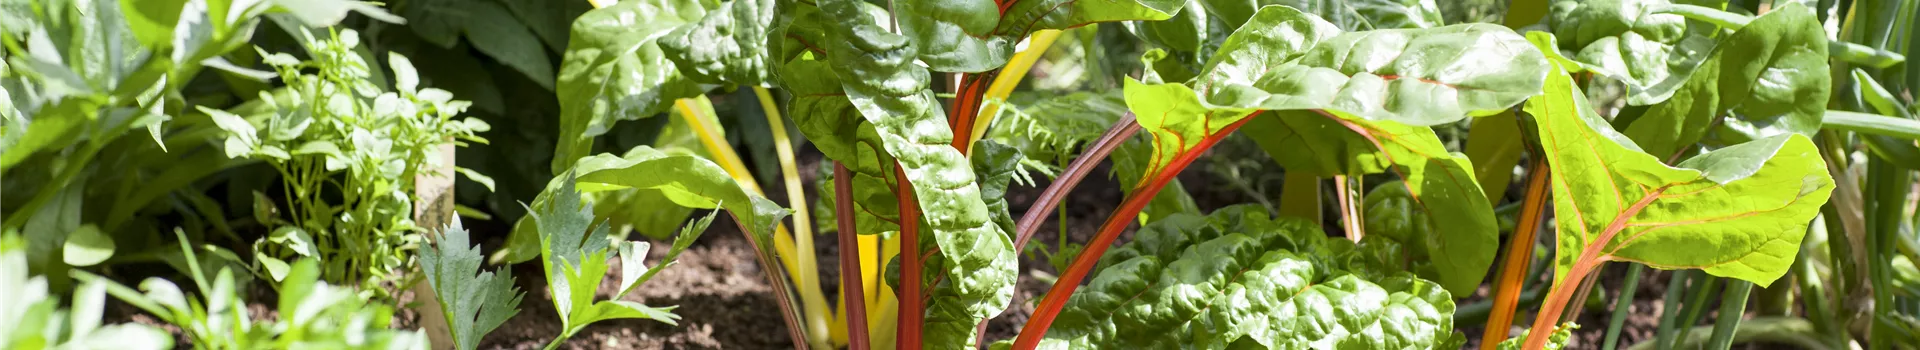 Frisches und leckeres Gemüse aus dem eigenen Garten